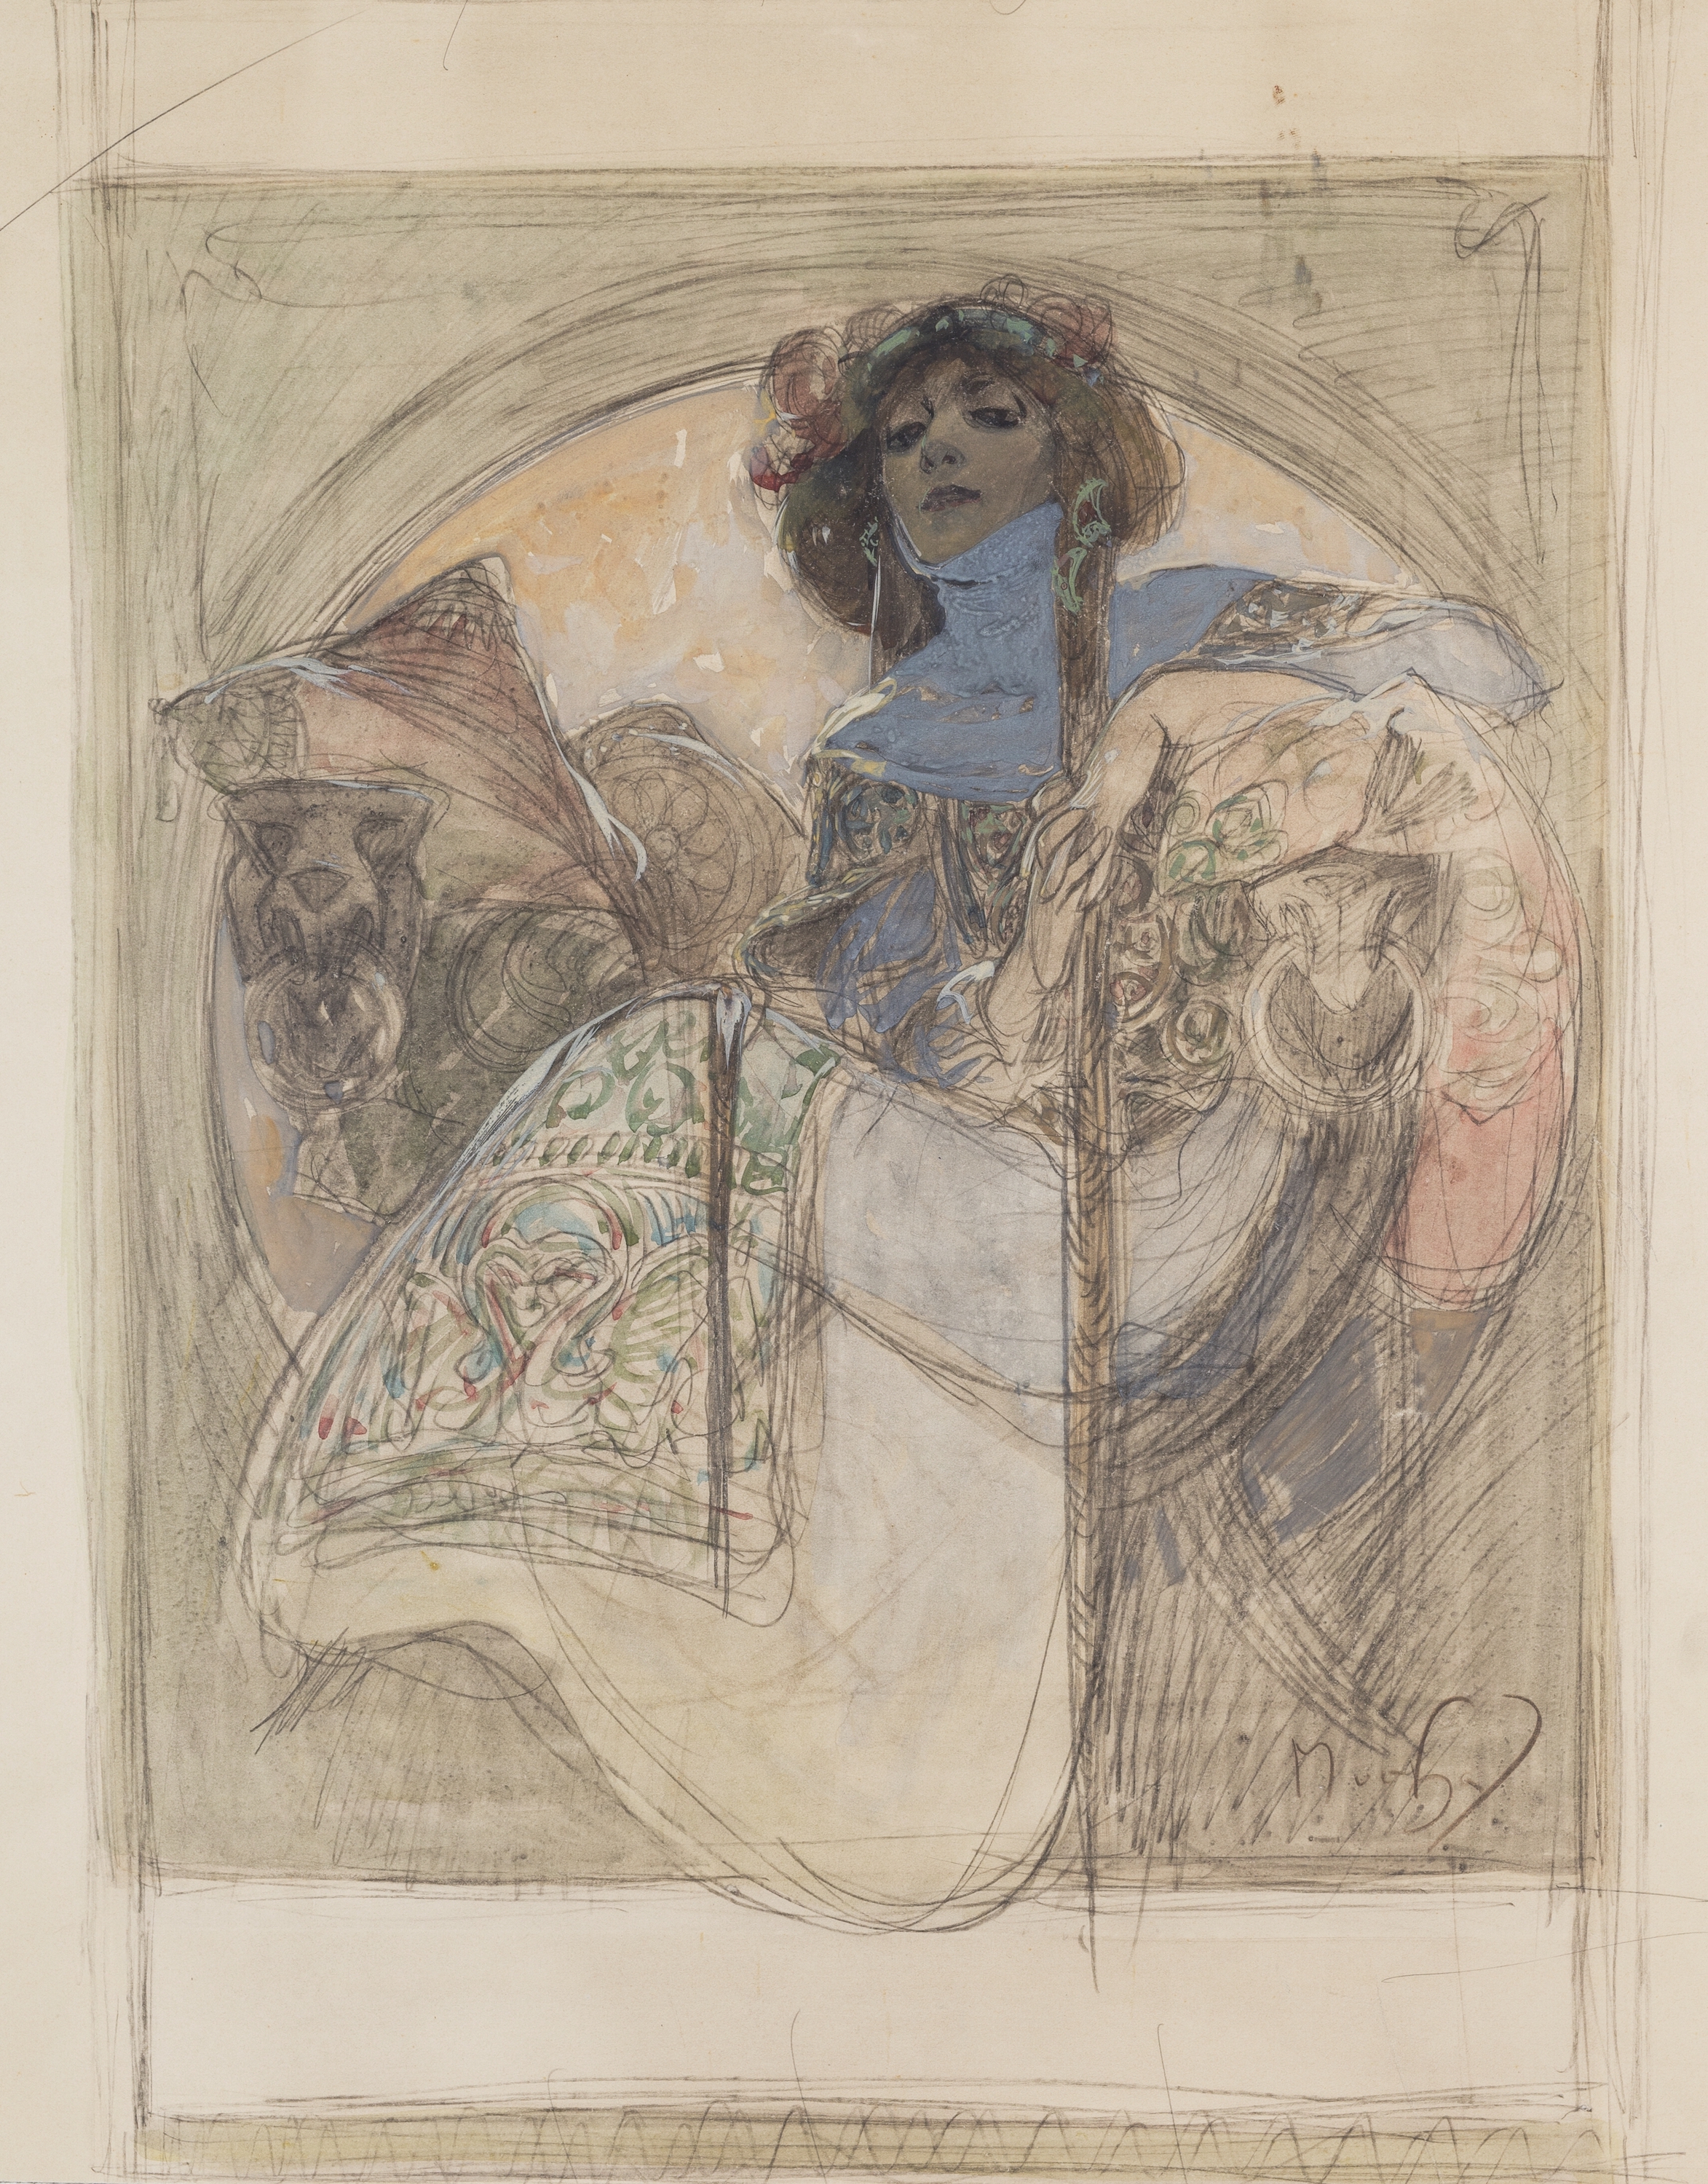 إمرأة جالسة - دراسة لملصق by Alphonse Mucha - ١٨٩٧ - ٤٣،٧ سم x ٤٩،٦  